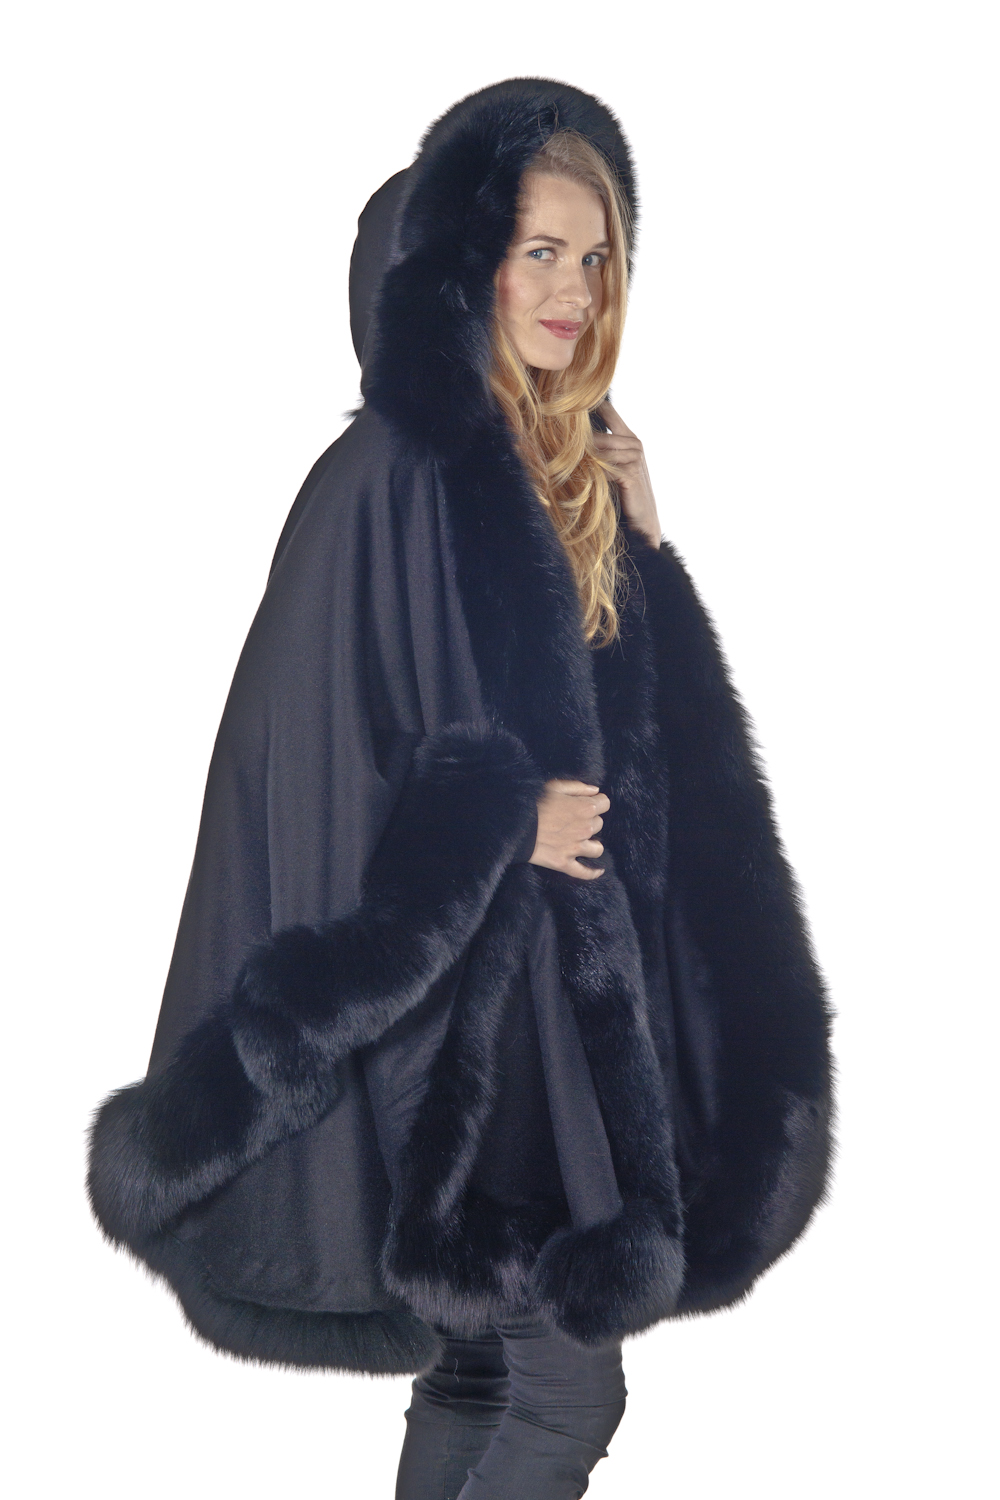 Black Plus Size Cashmere Cape – Detachable Hood – Madison Avenue Mall Furs